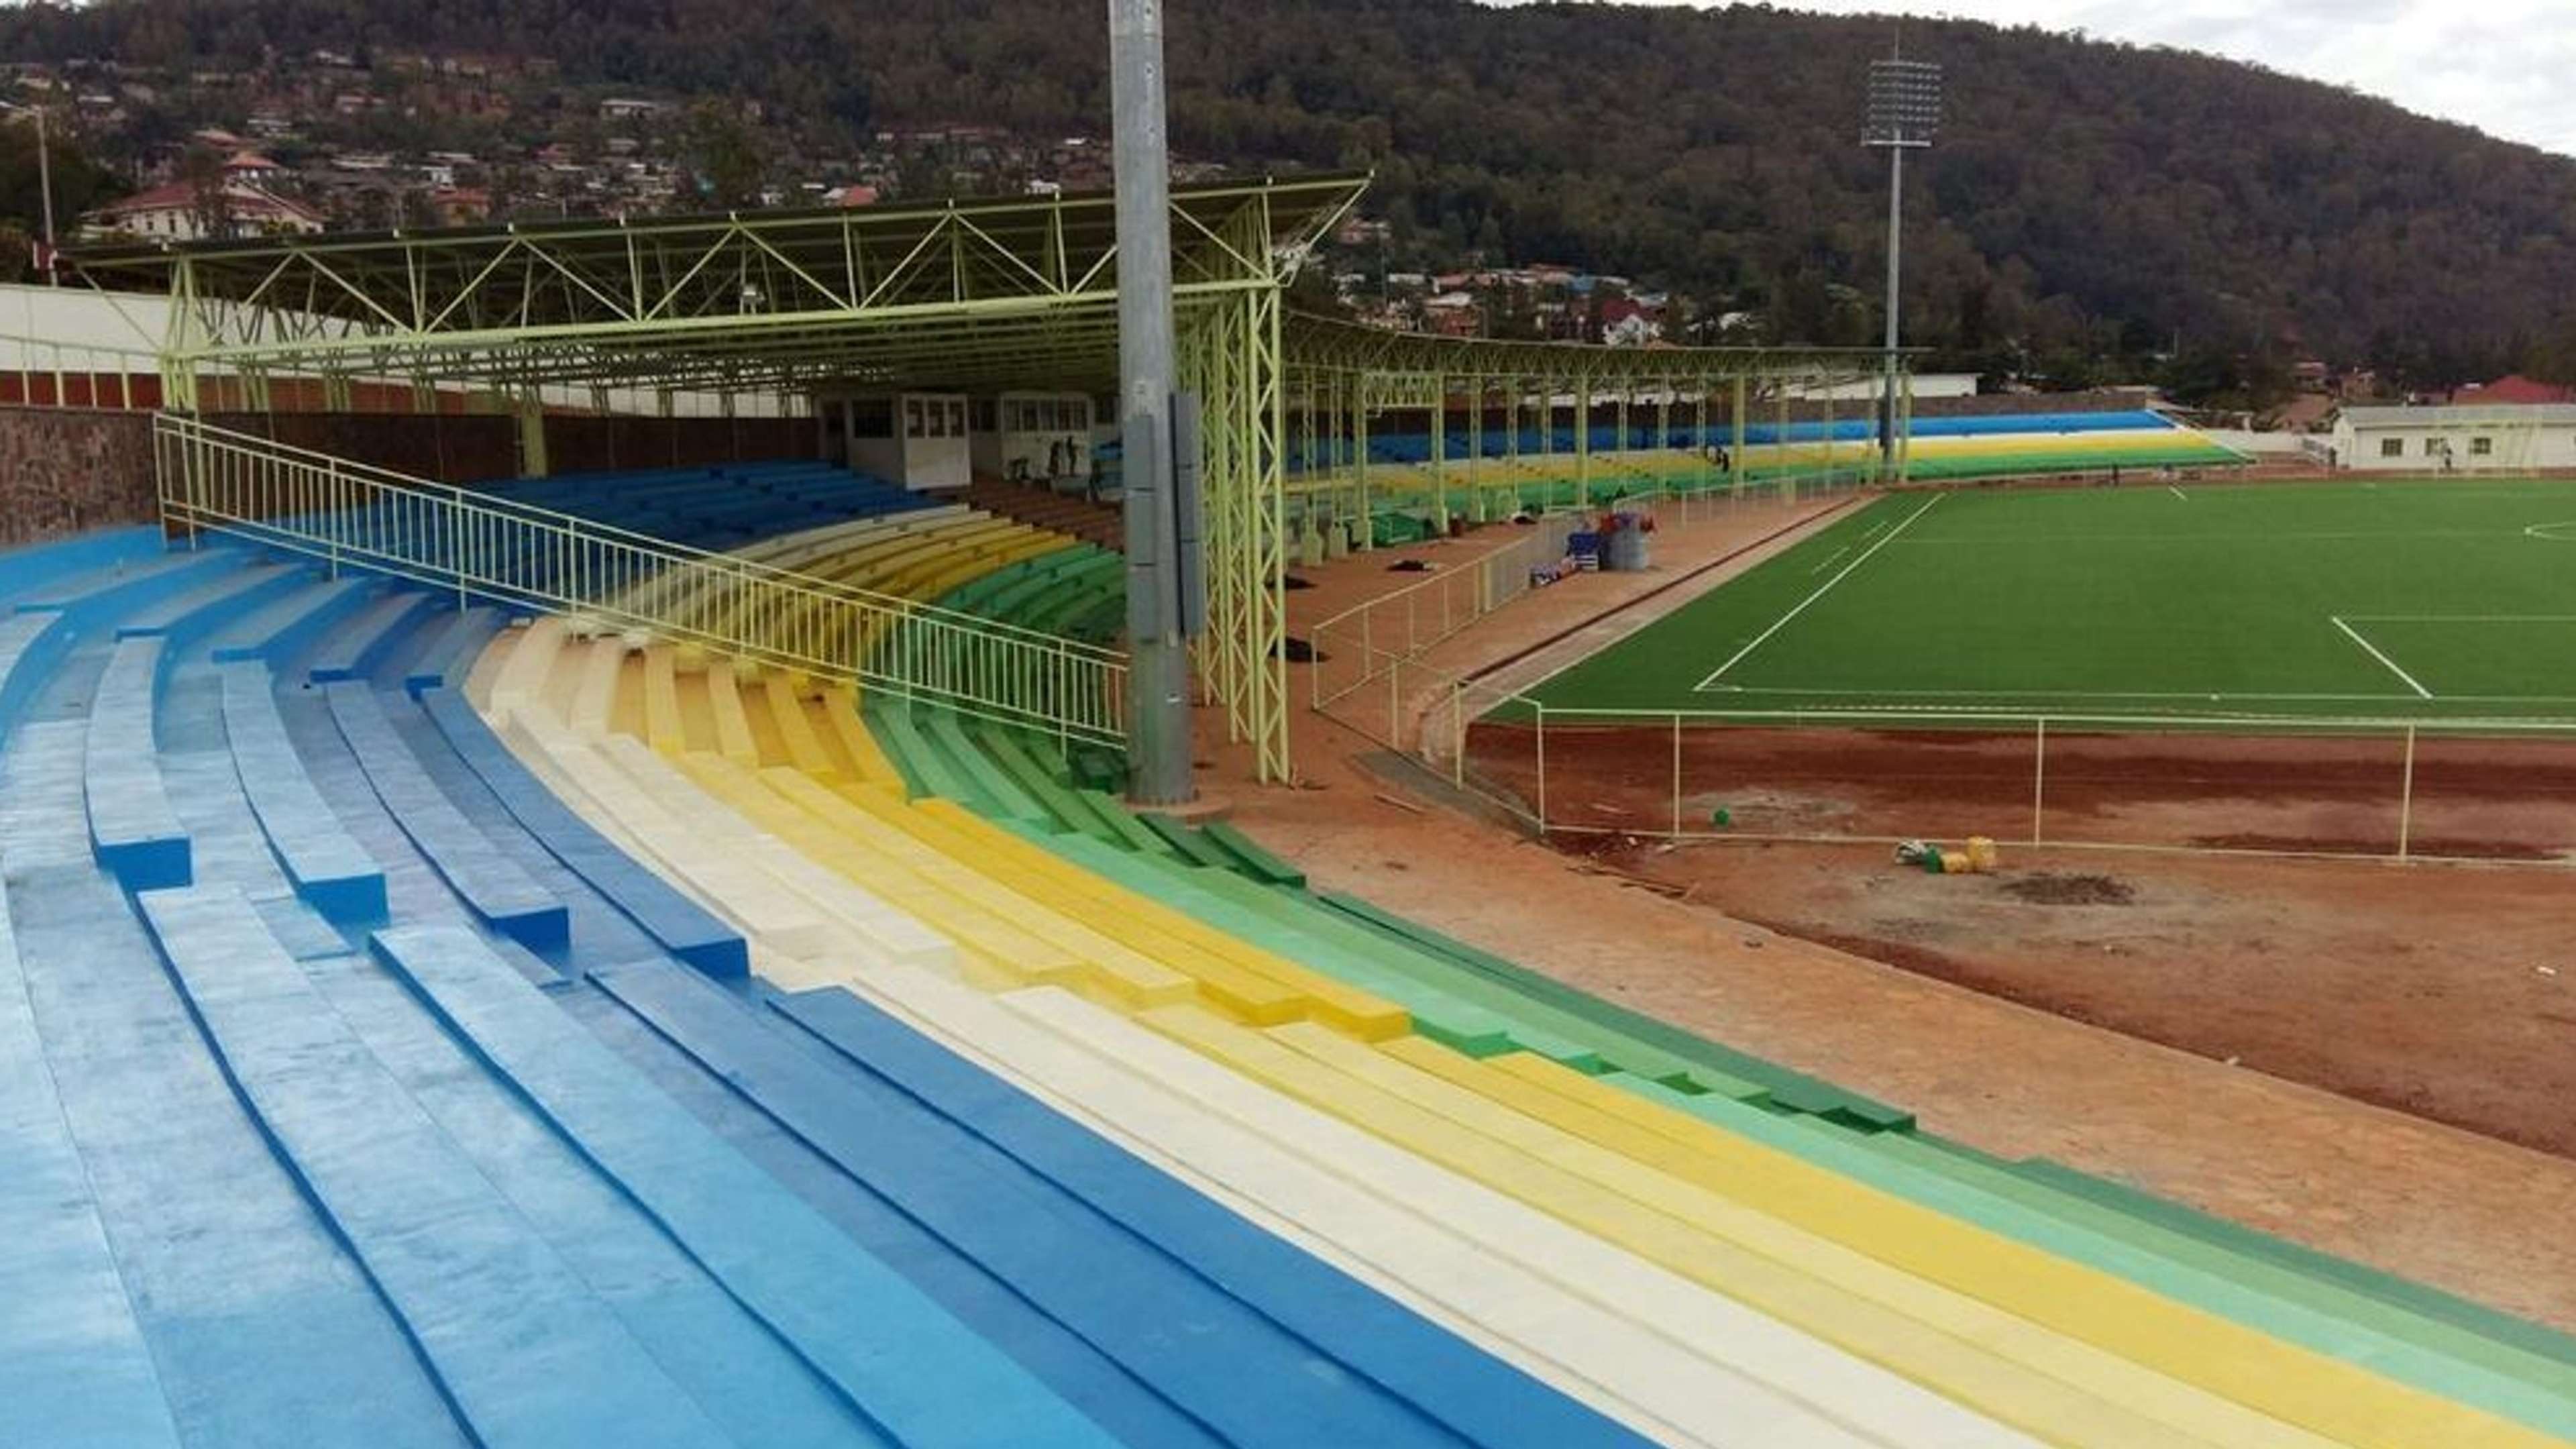 Nyamirambo Stade Stadium in Rwanda.